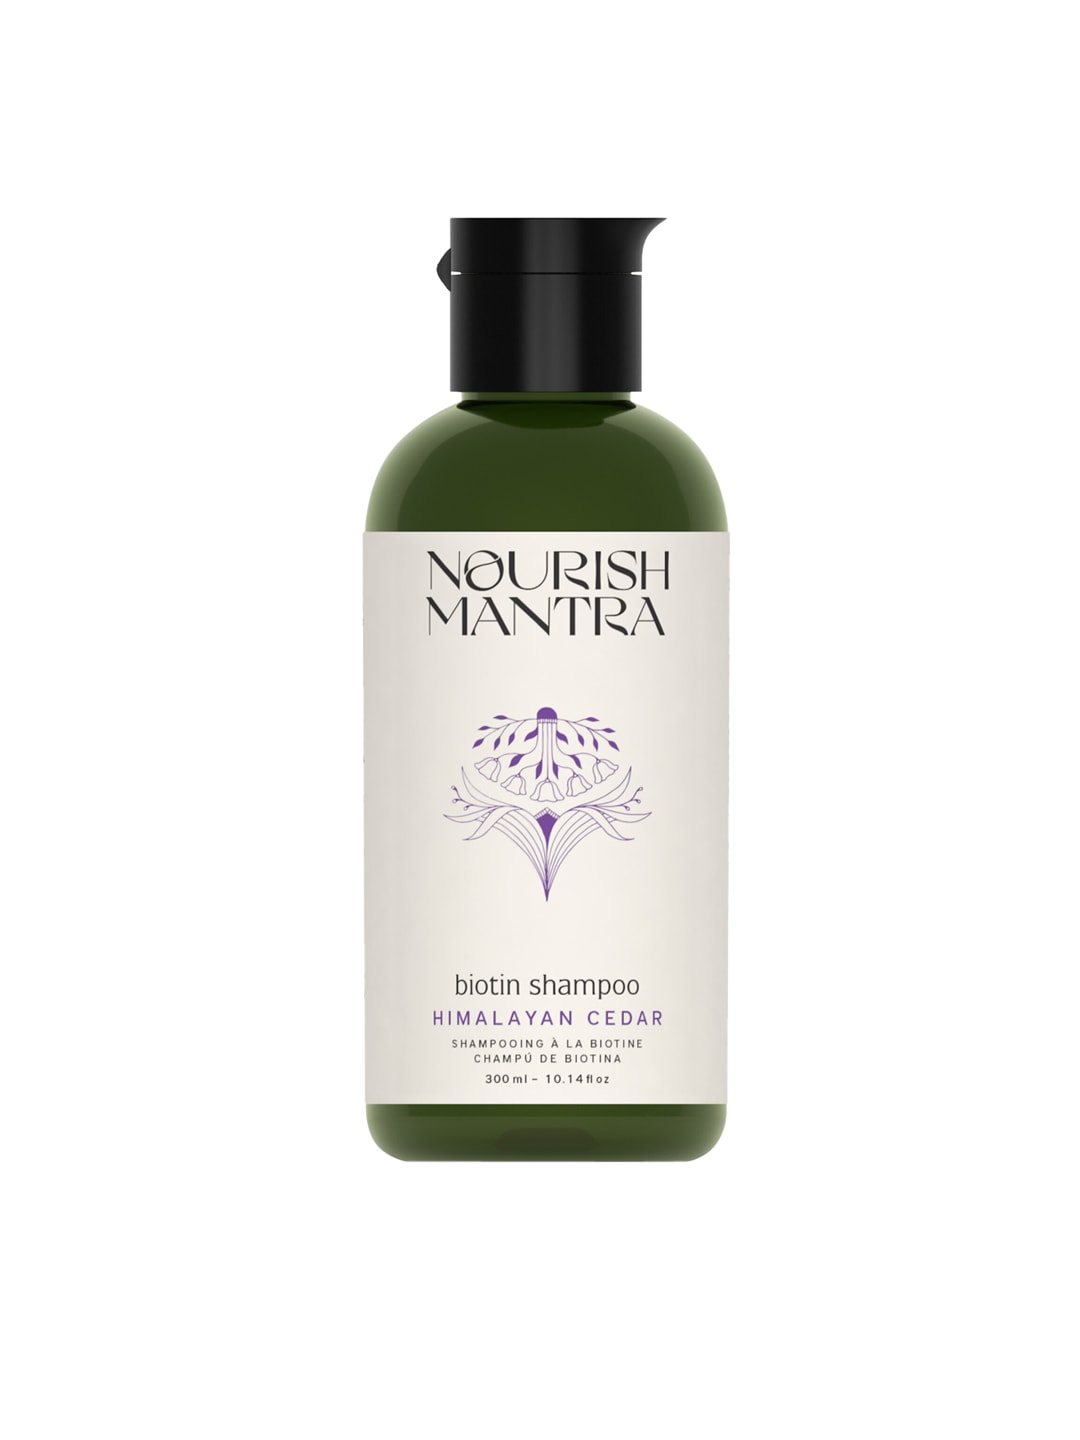 Nourish Mantra Himalayan Cedar Biotin Shampoo - 300 ml Price in India